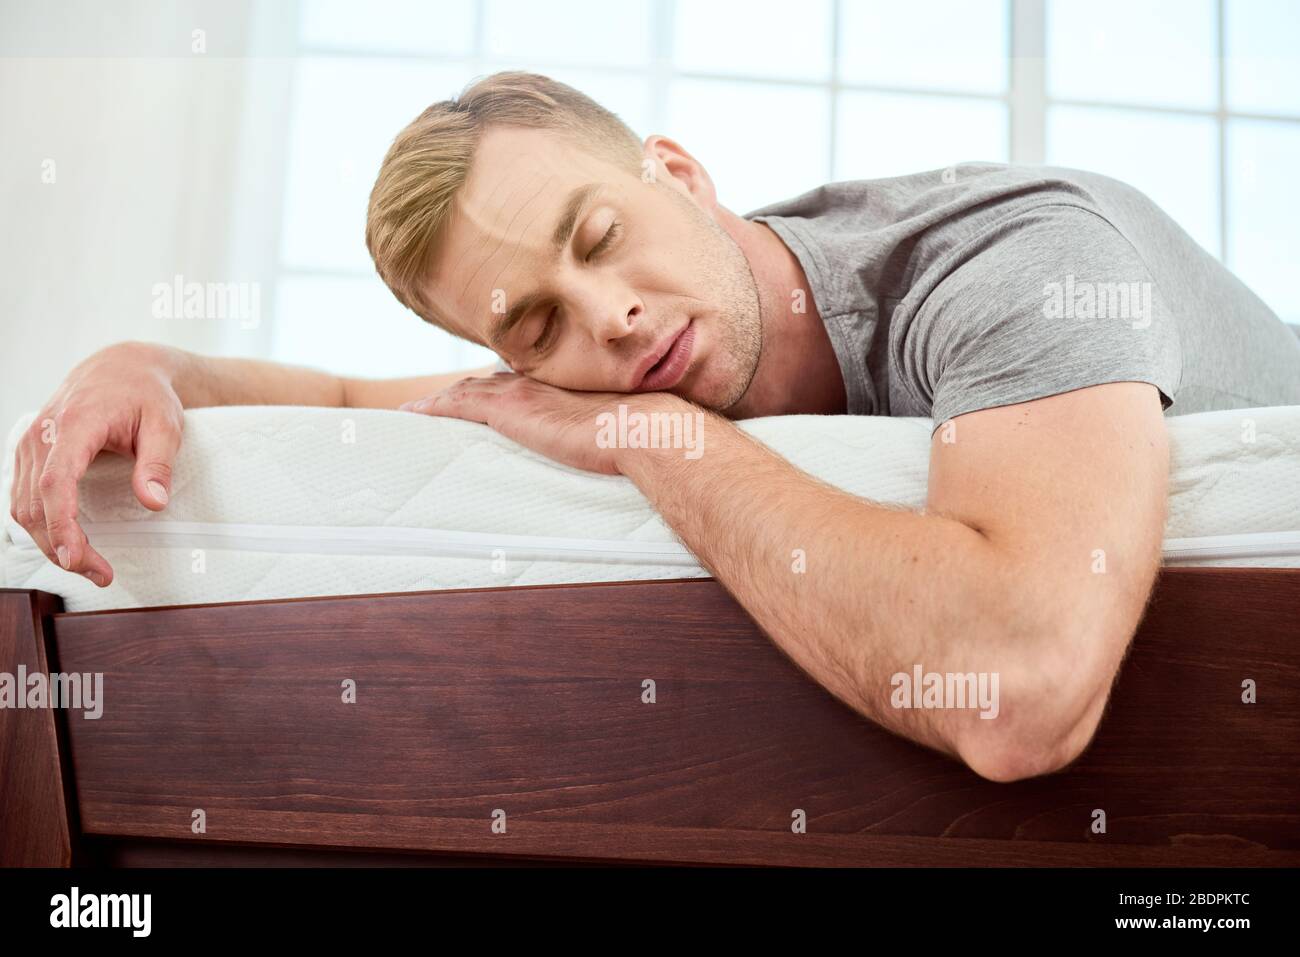 Junger schöner Mann schläft auf einer großen und komfortablen orthopädischen weißen Matratze im Schlafzimmer. Ein Nickerchen machen. Müde fühlen. Startseite Stockfoto